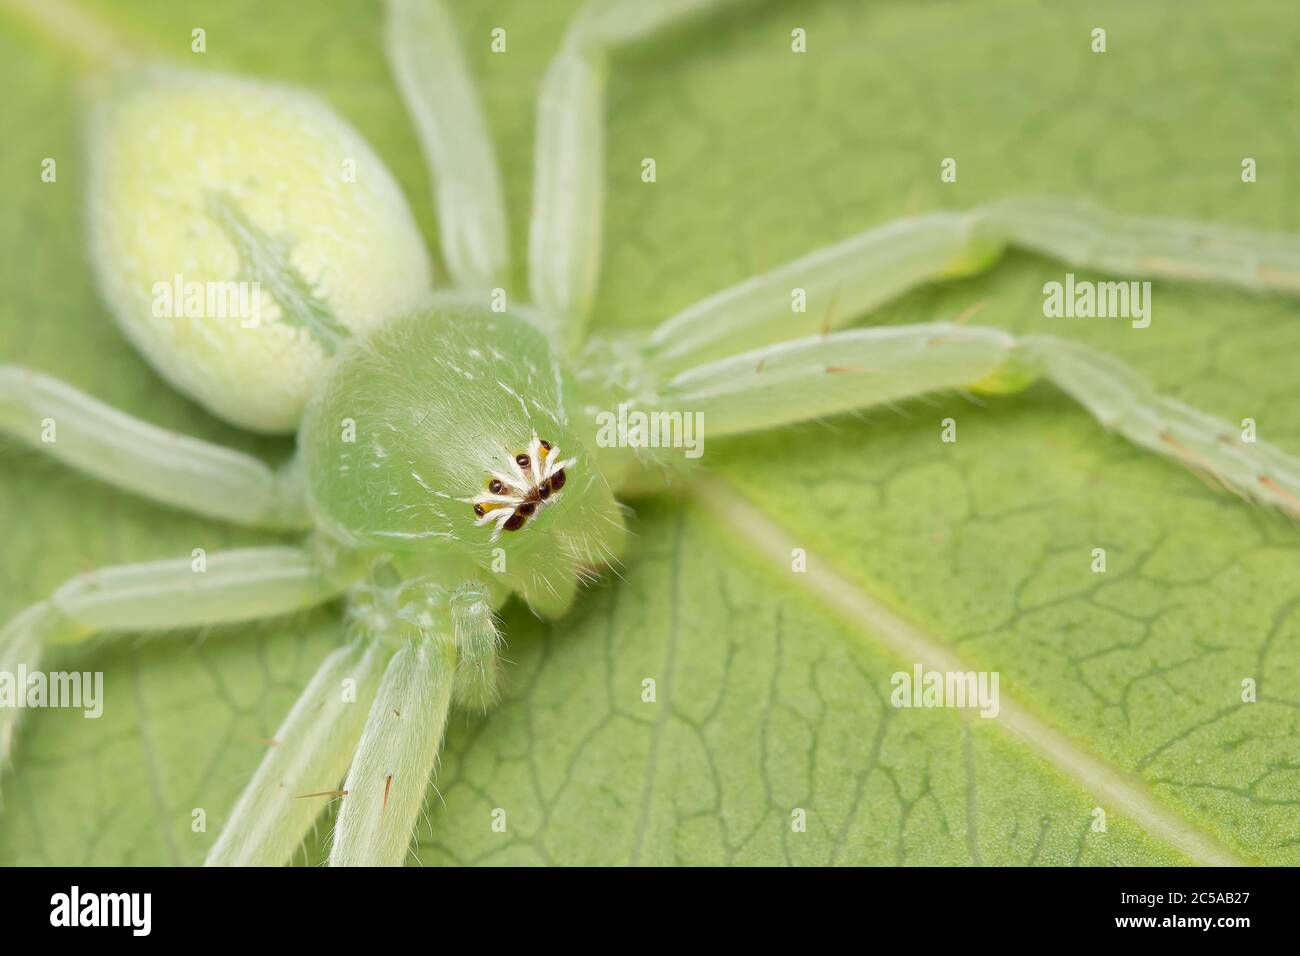 Gros plan d'une araignée huntsman verte reposant sur une feuille Banque D'Images